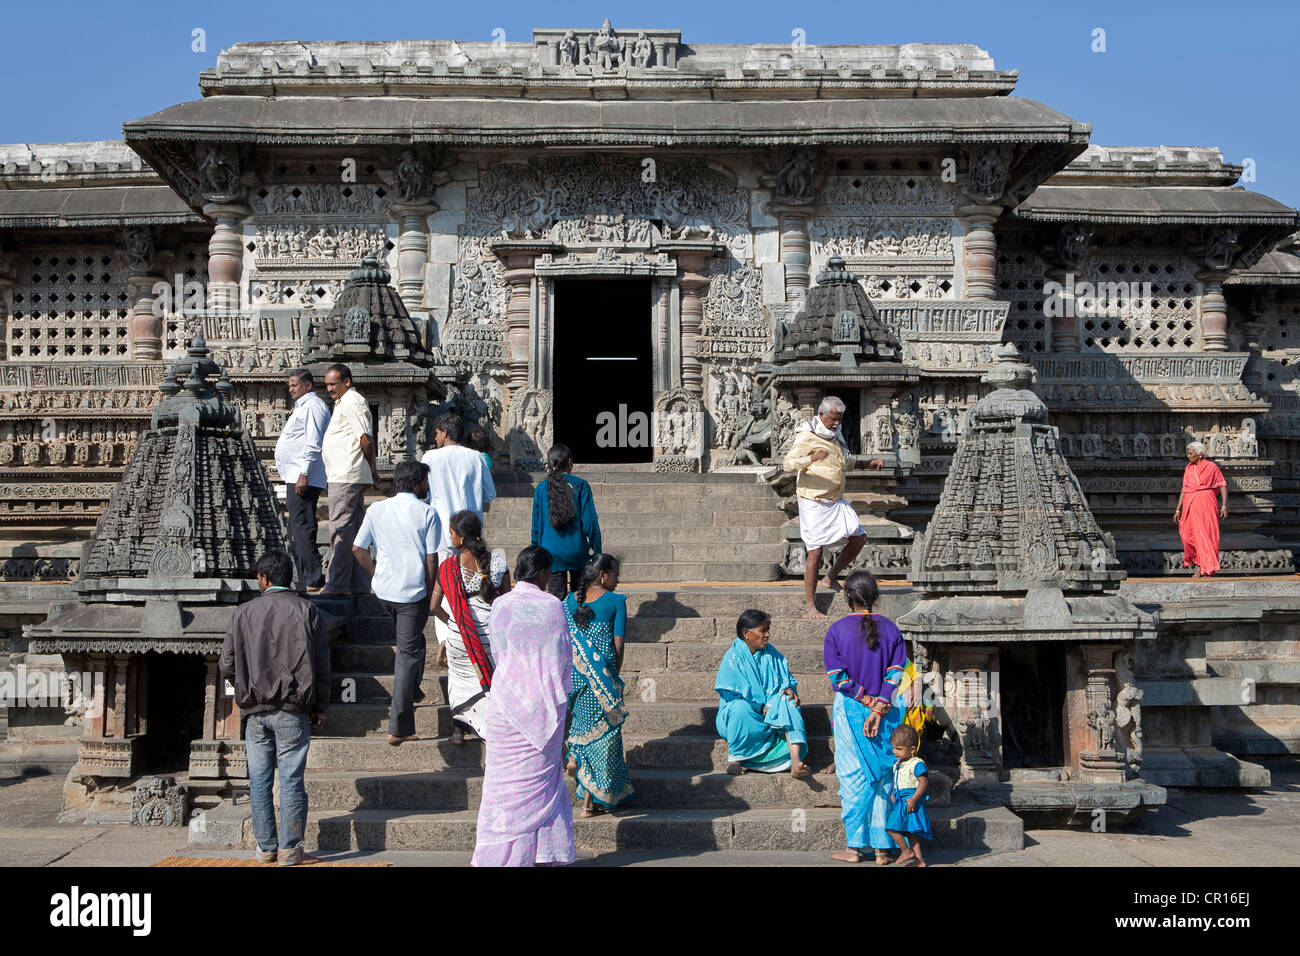 Temple Chennakeshava. Belur. Karnataka. L'Inde Banque D'Images